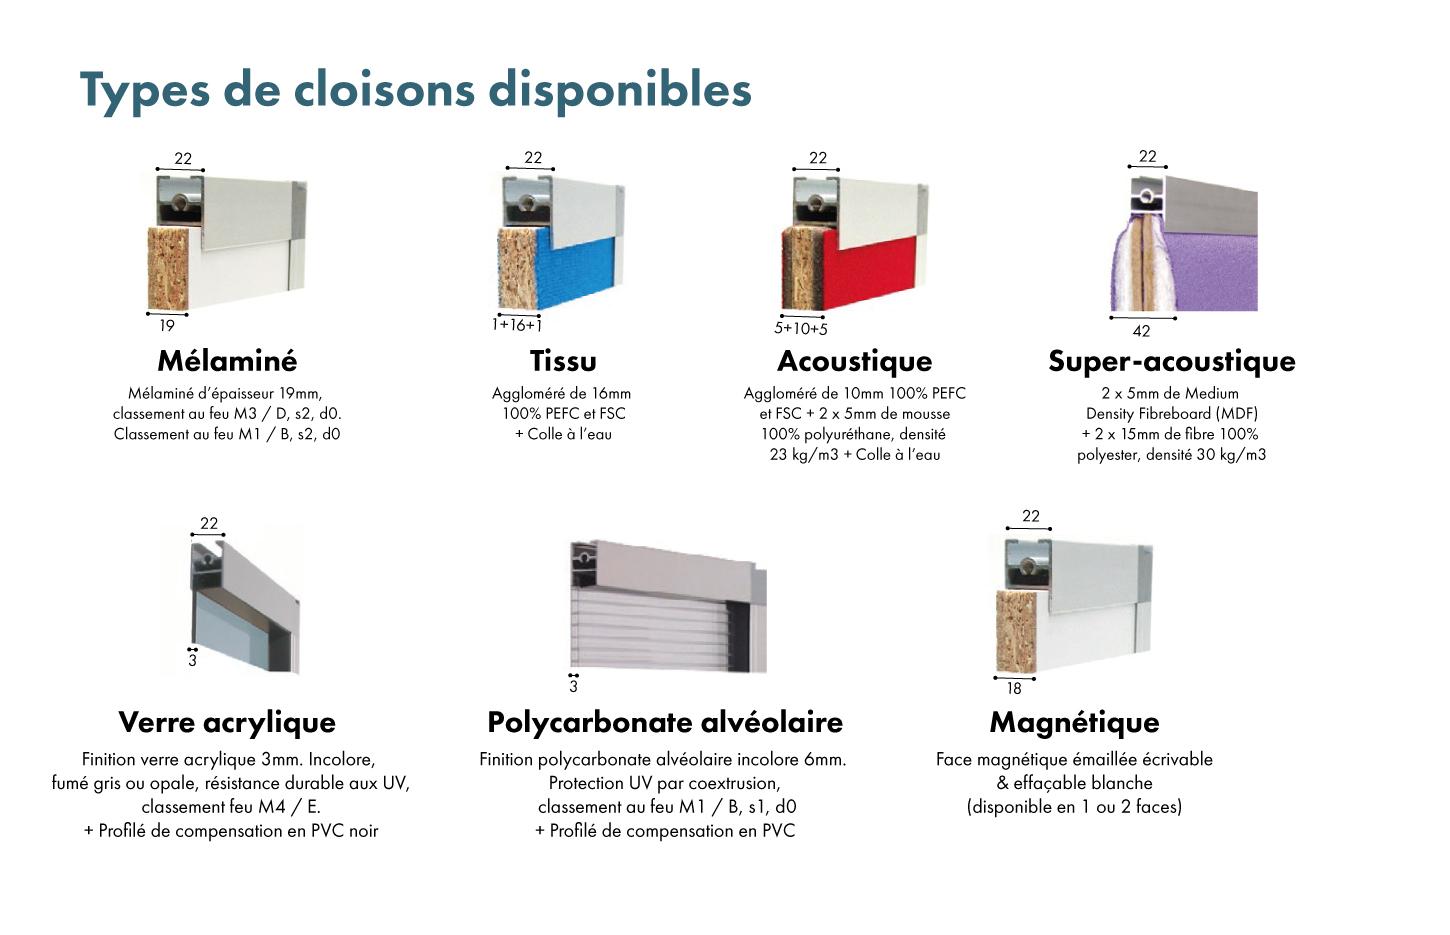 Cloison amovible mélaminé, tissu, acoustique, Fabrication Française, gamme Cloisonnette - France Bureau